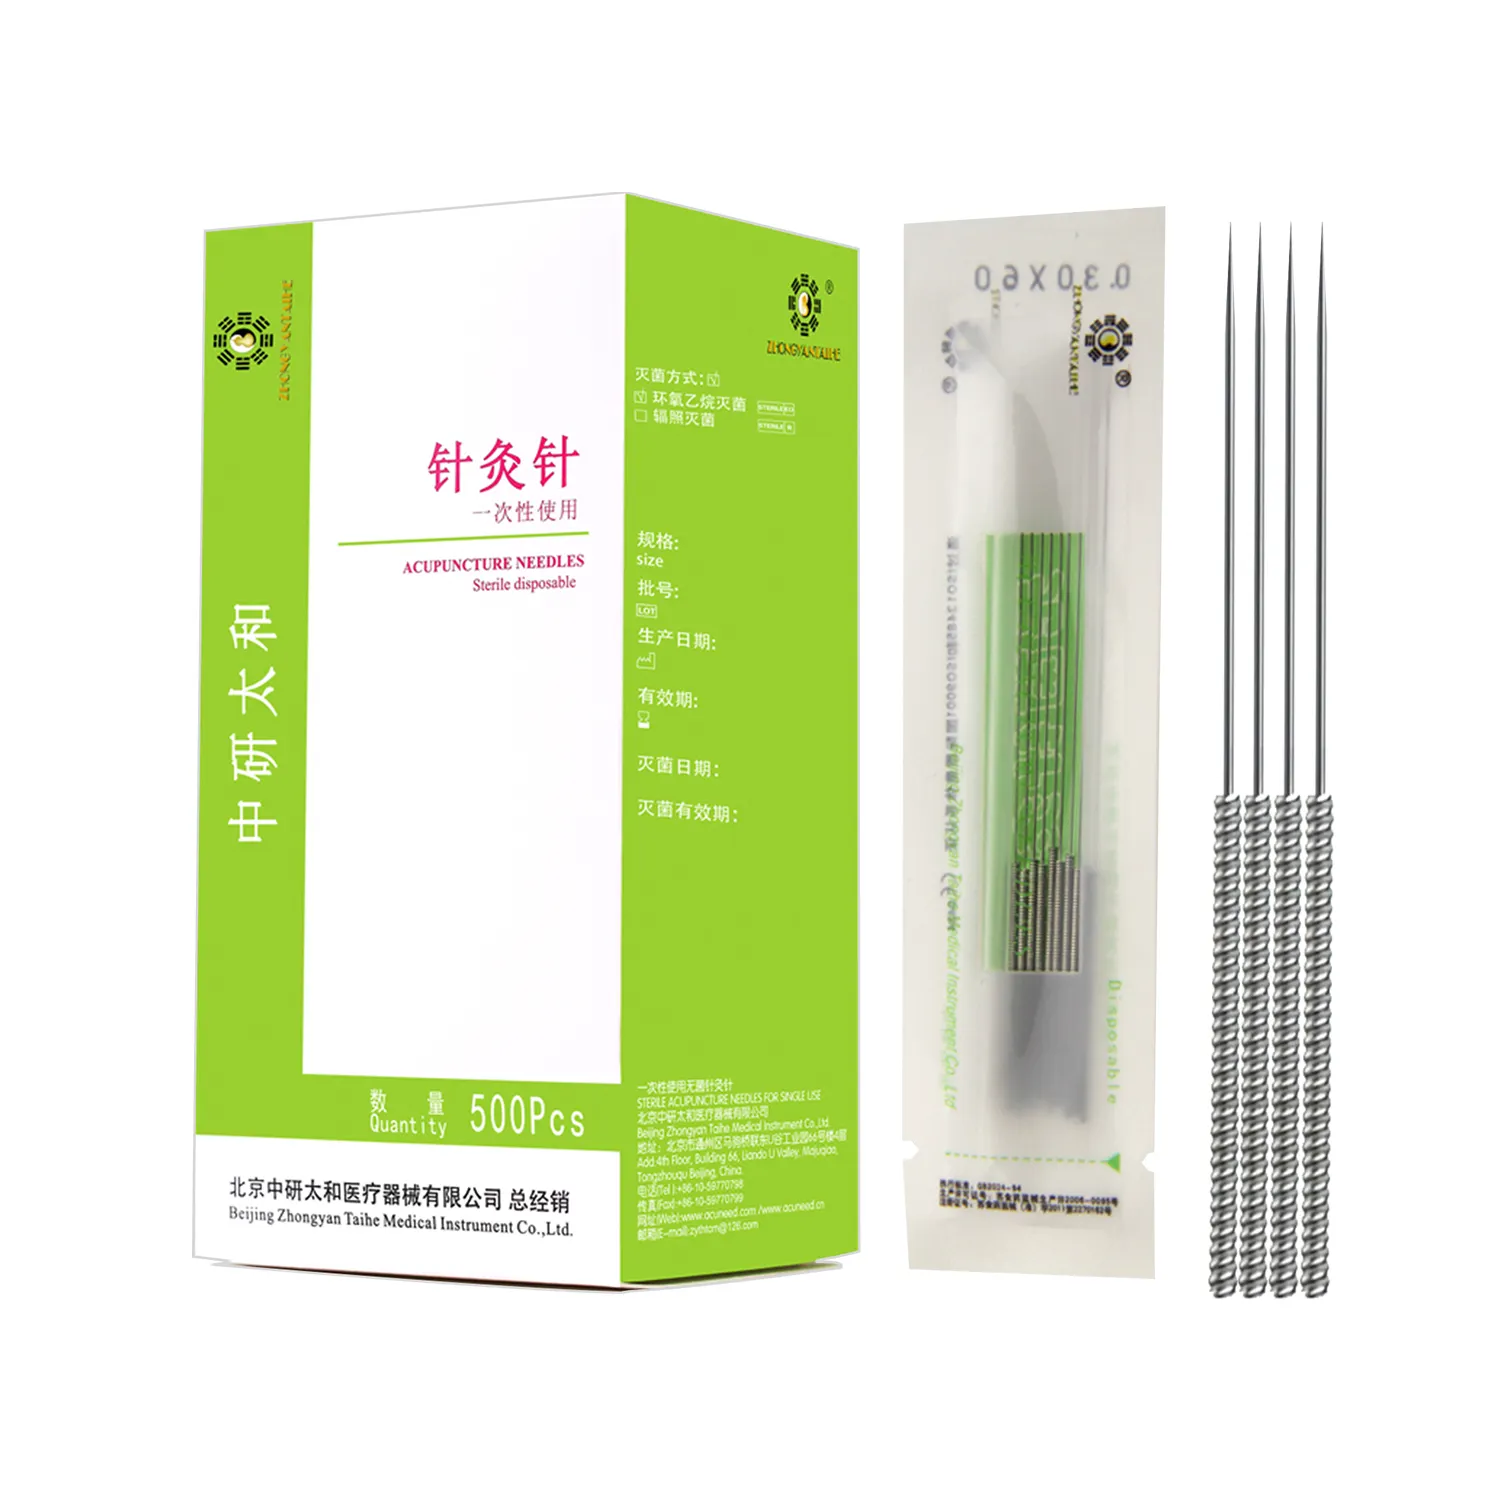 Zhongyan Taihe-agujas de acupuntura estériles desechables con tubo, 500 unidades